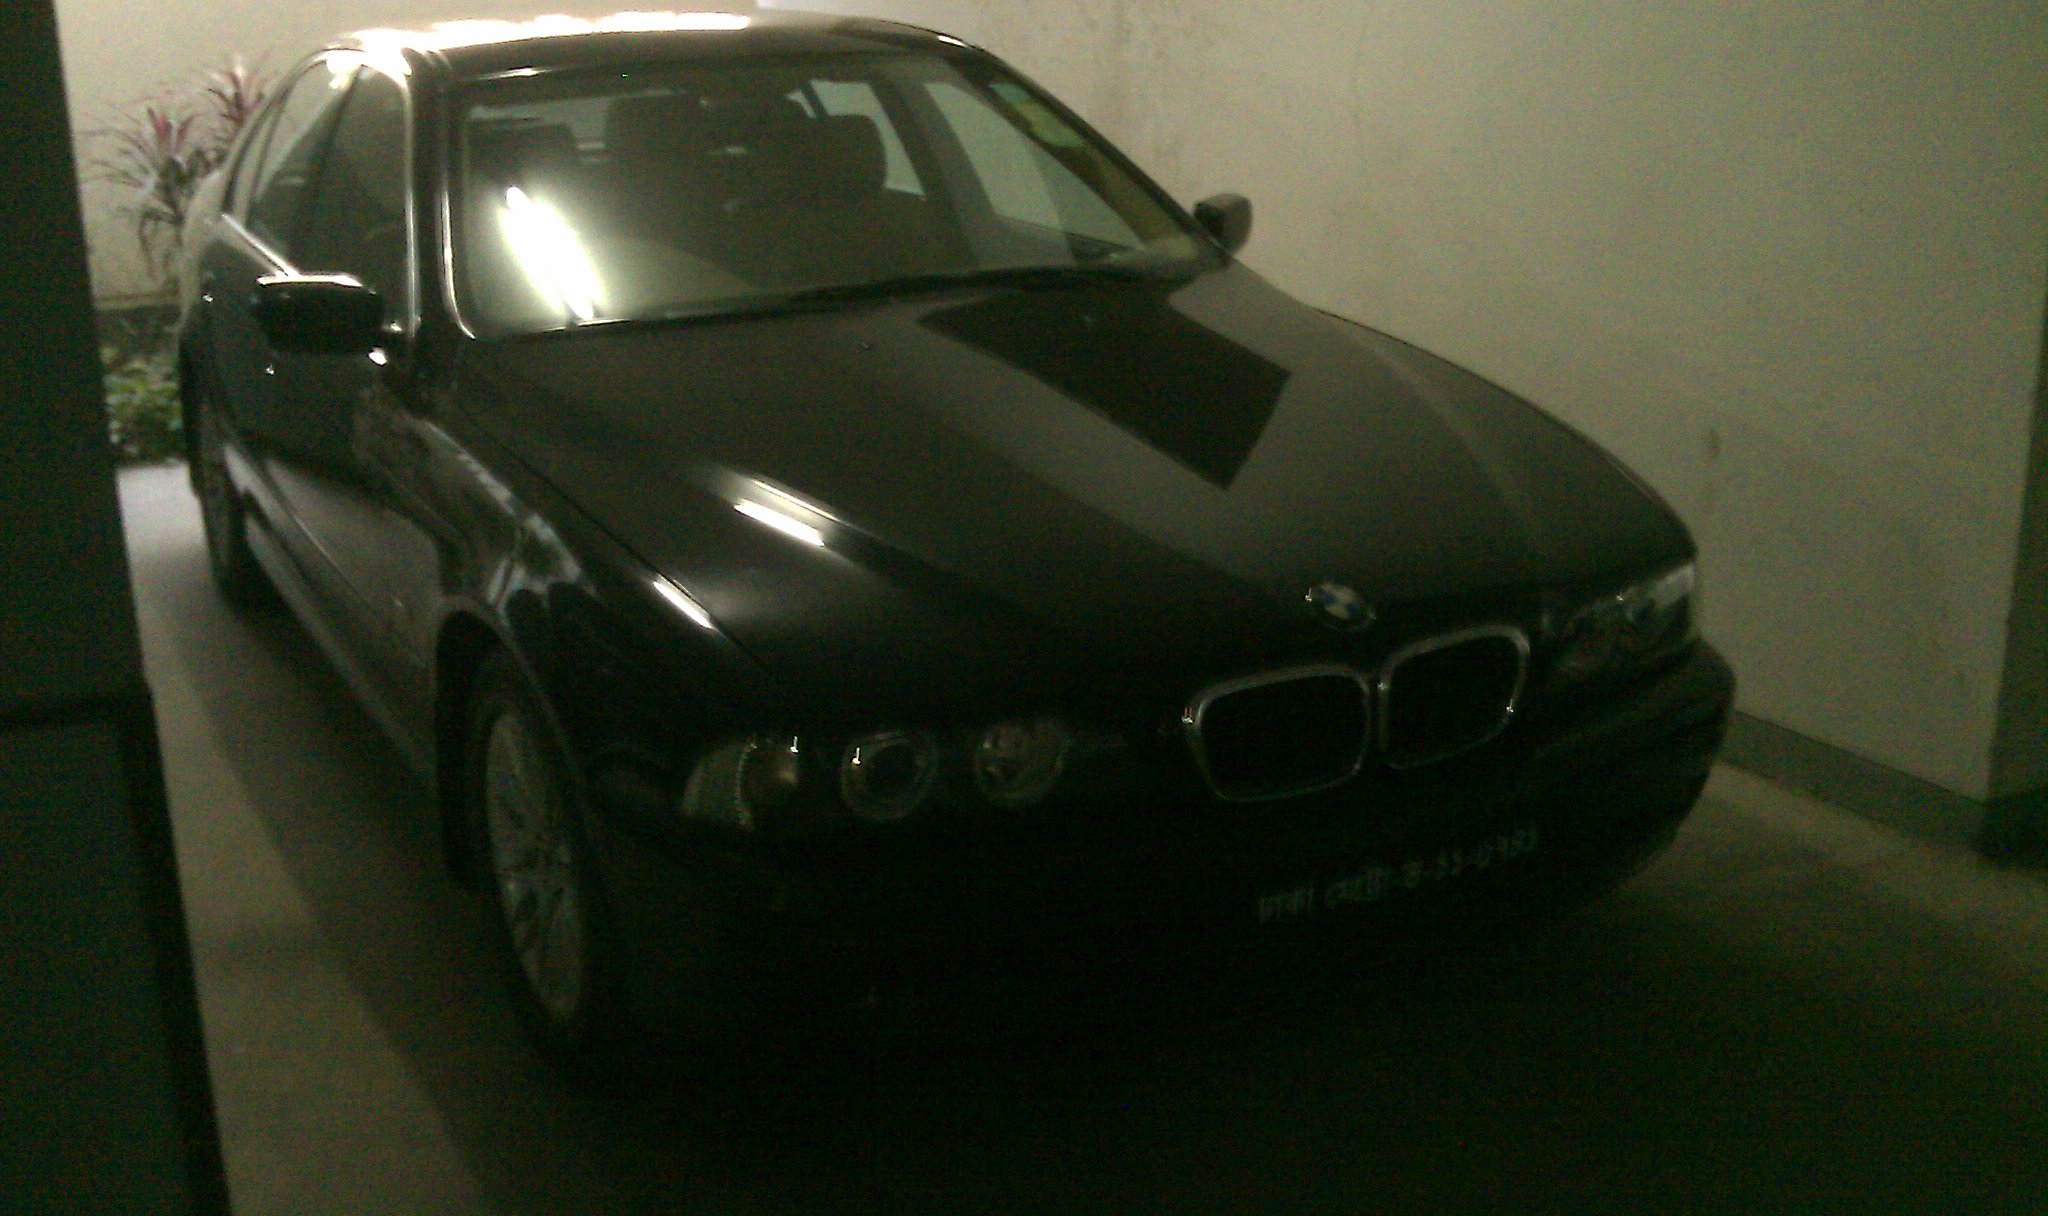 BMW 5 series 2003 2005 Black large image 1